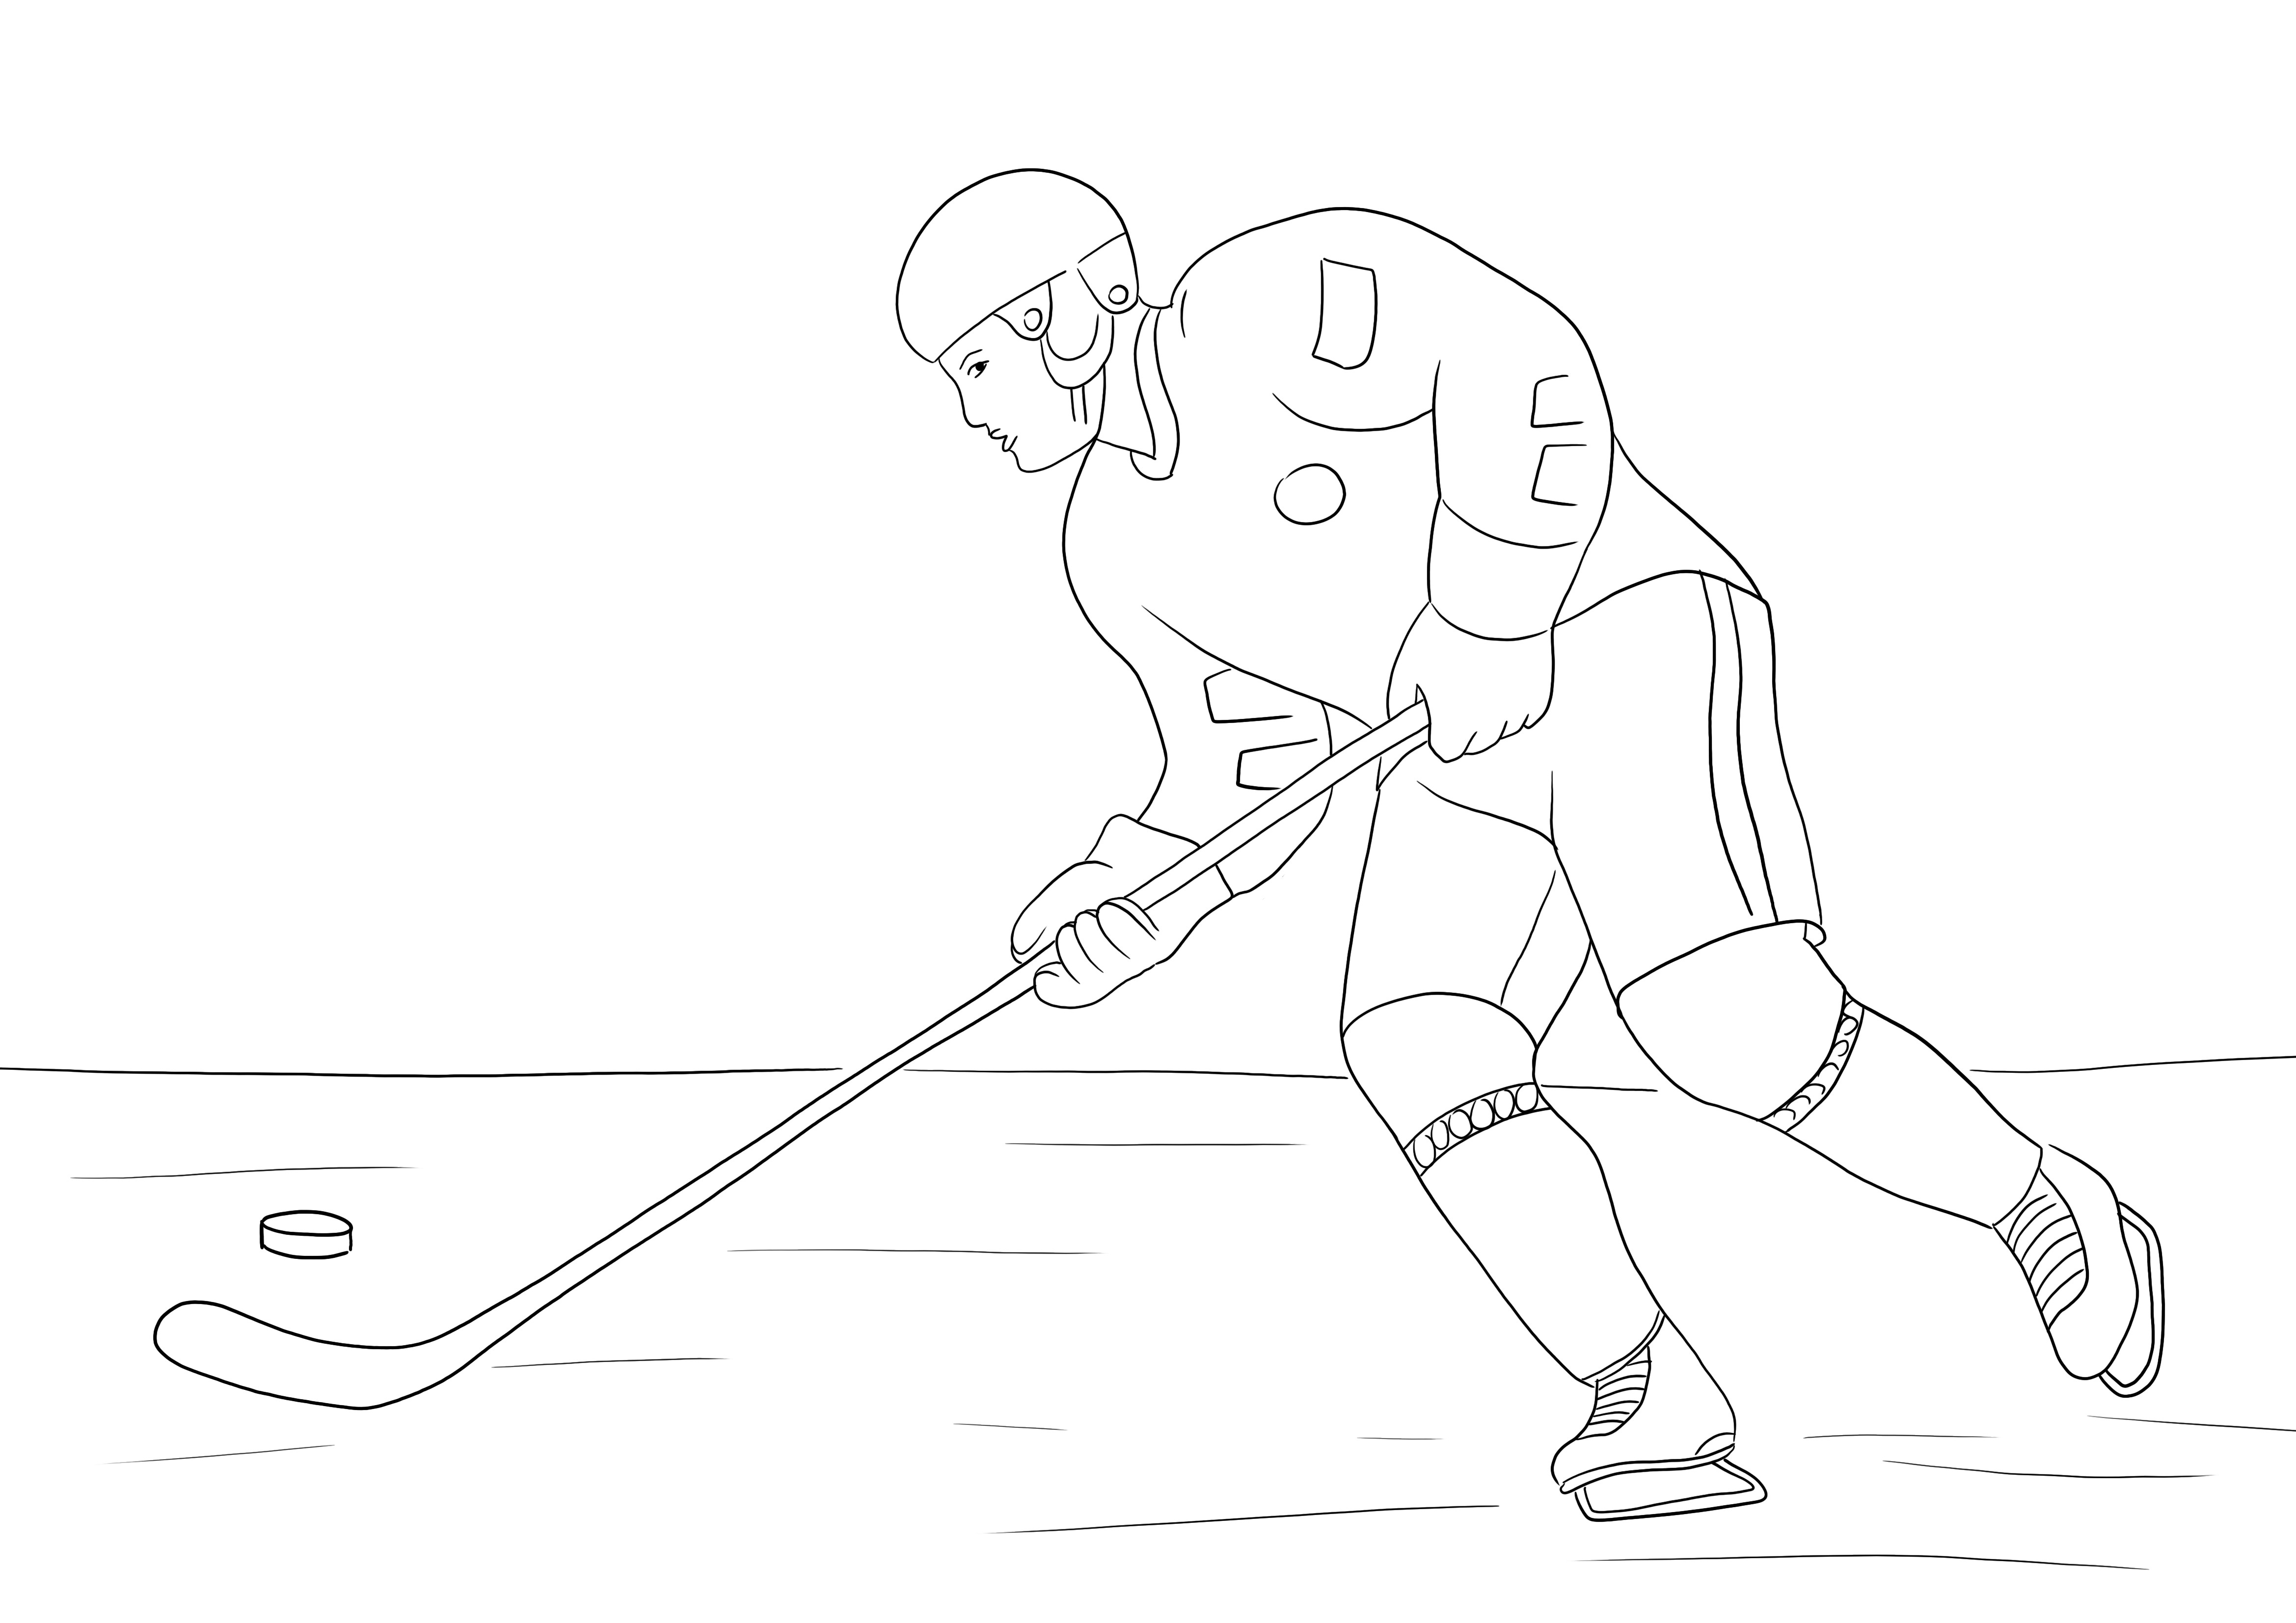 Download fácil e gratuito do Hockey Player para colorir e divertir as crianças